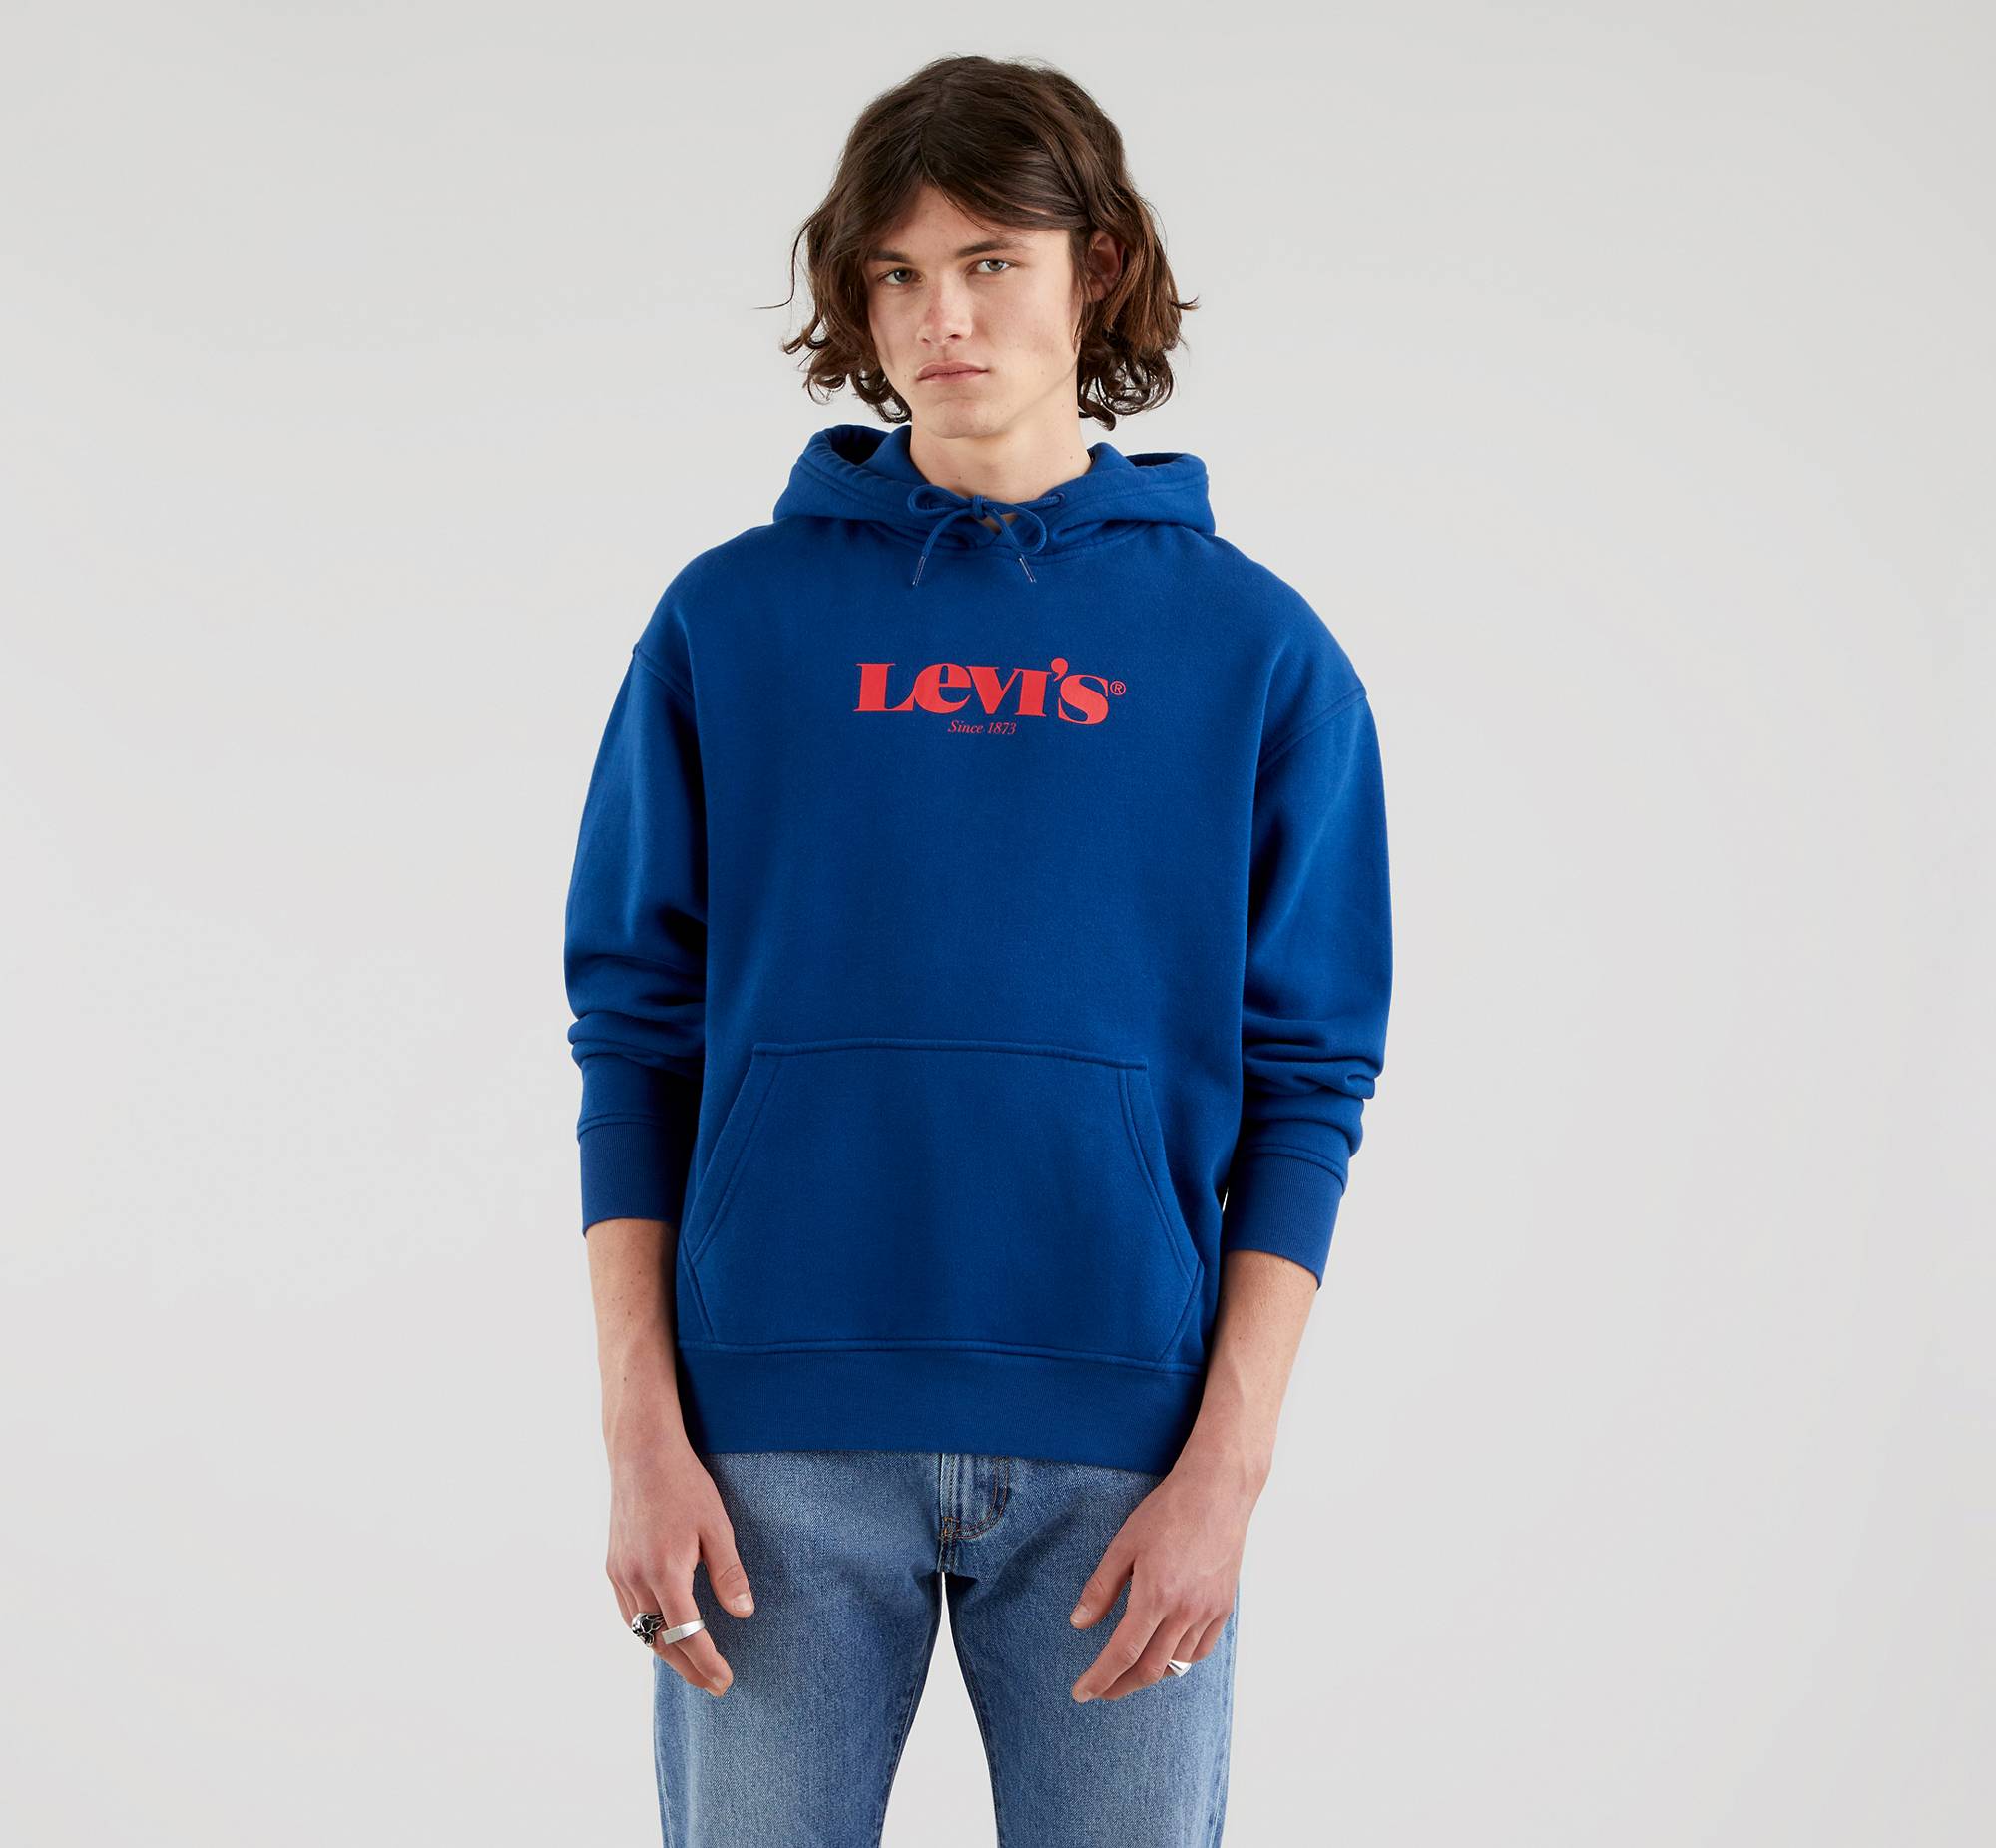 blue lv hoodie